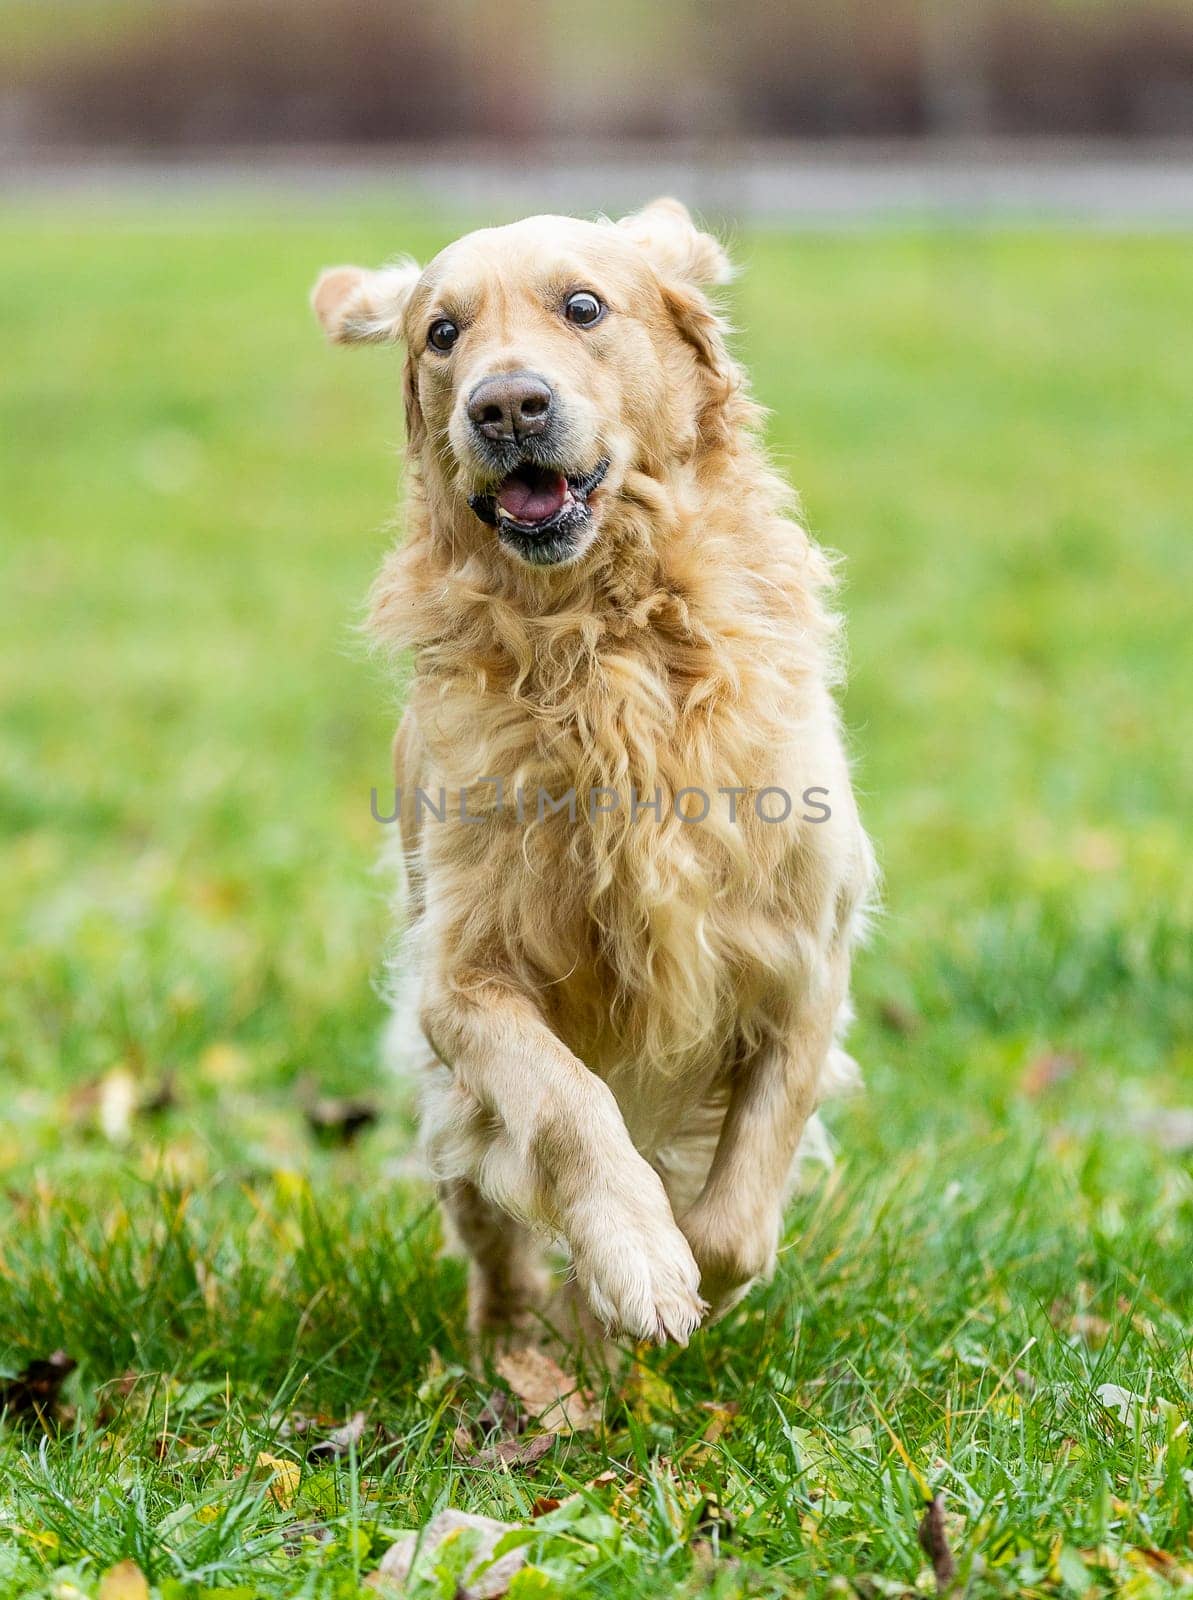 Runing golden labrador retriever outside, dog animal concept by Kadula